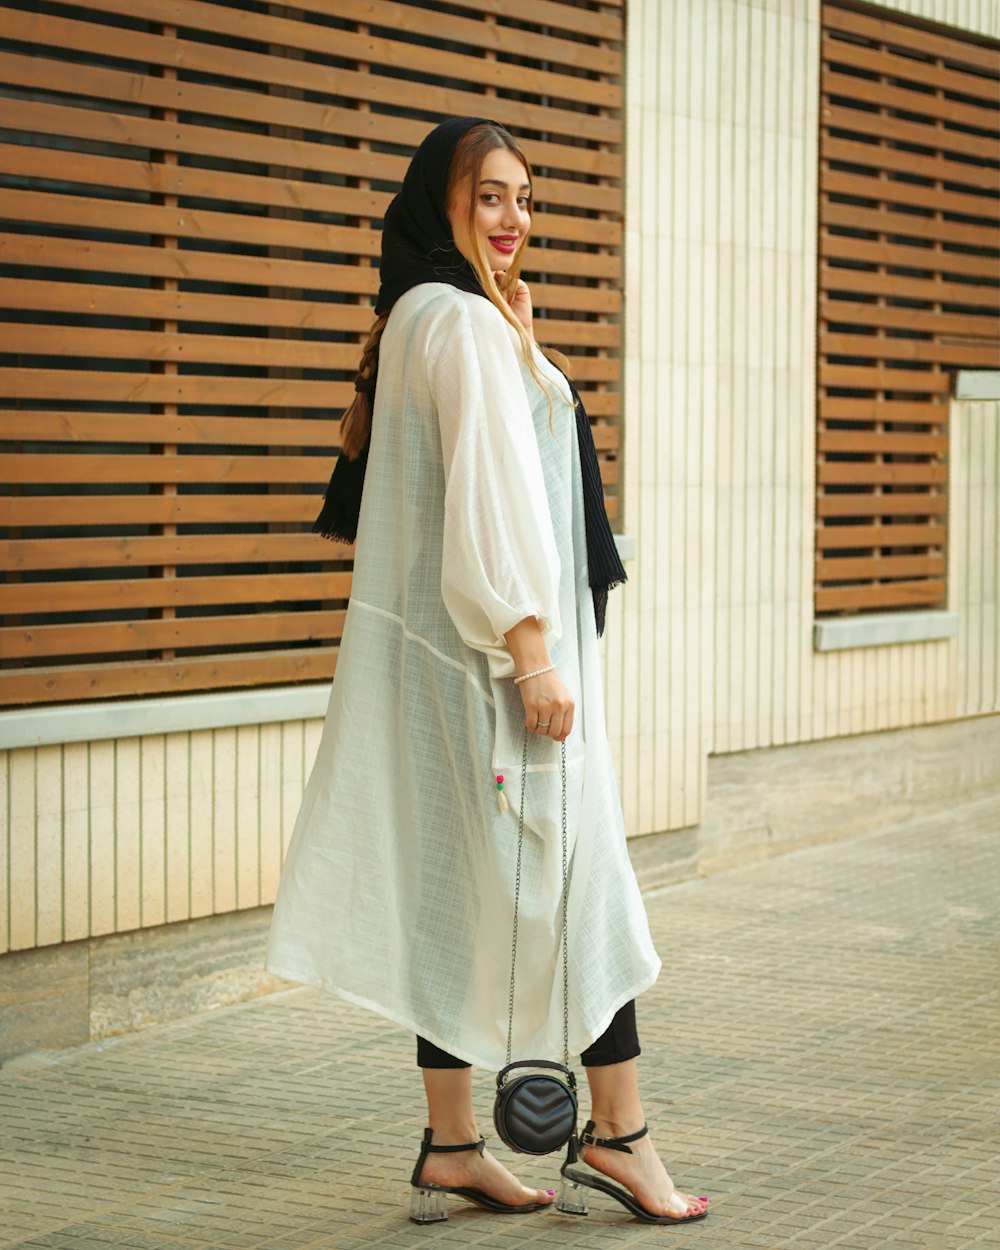 Une femme en robe blanche se tient sur un trottoir